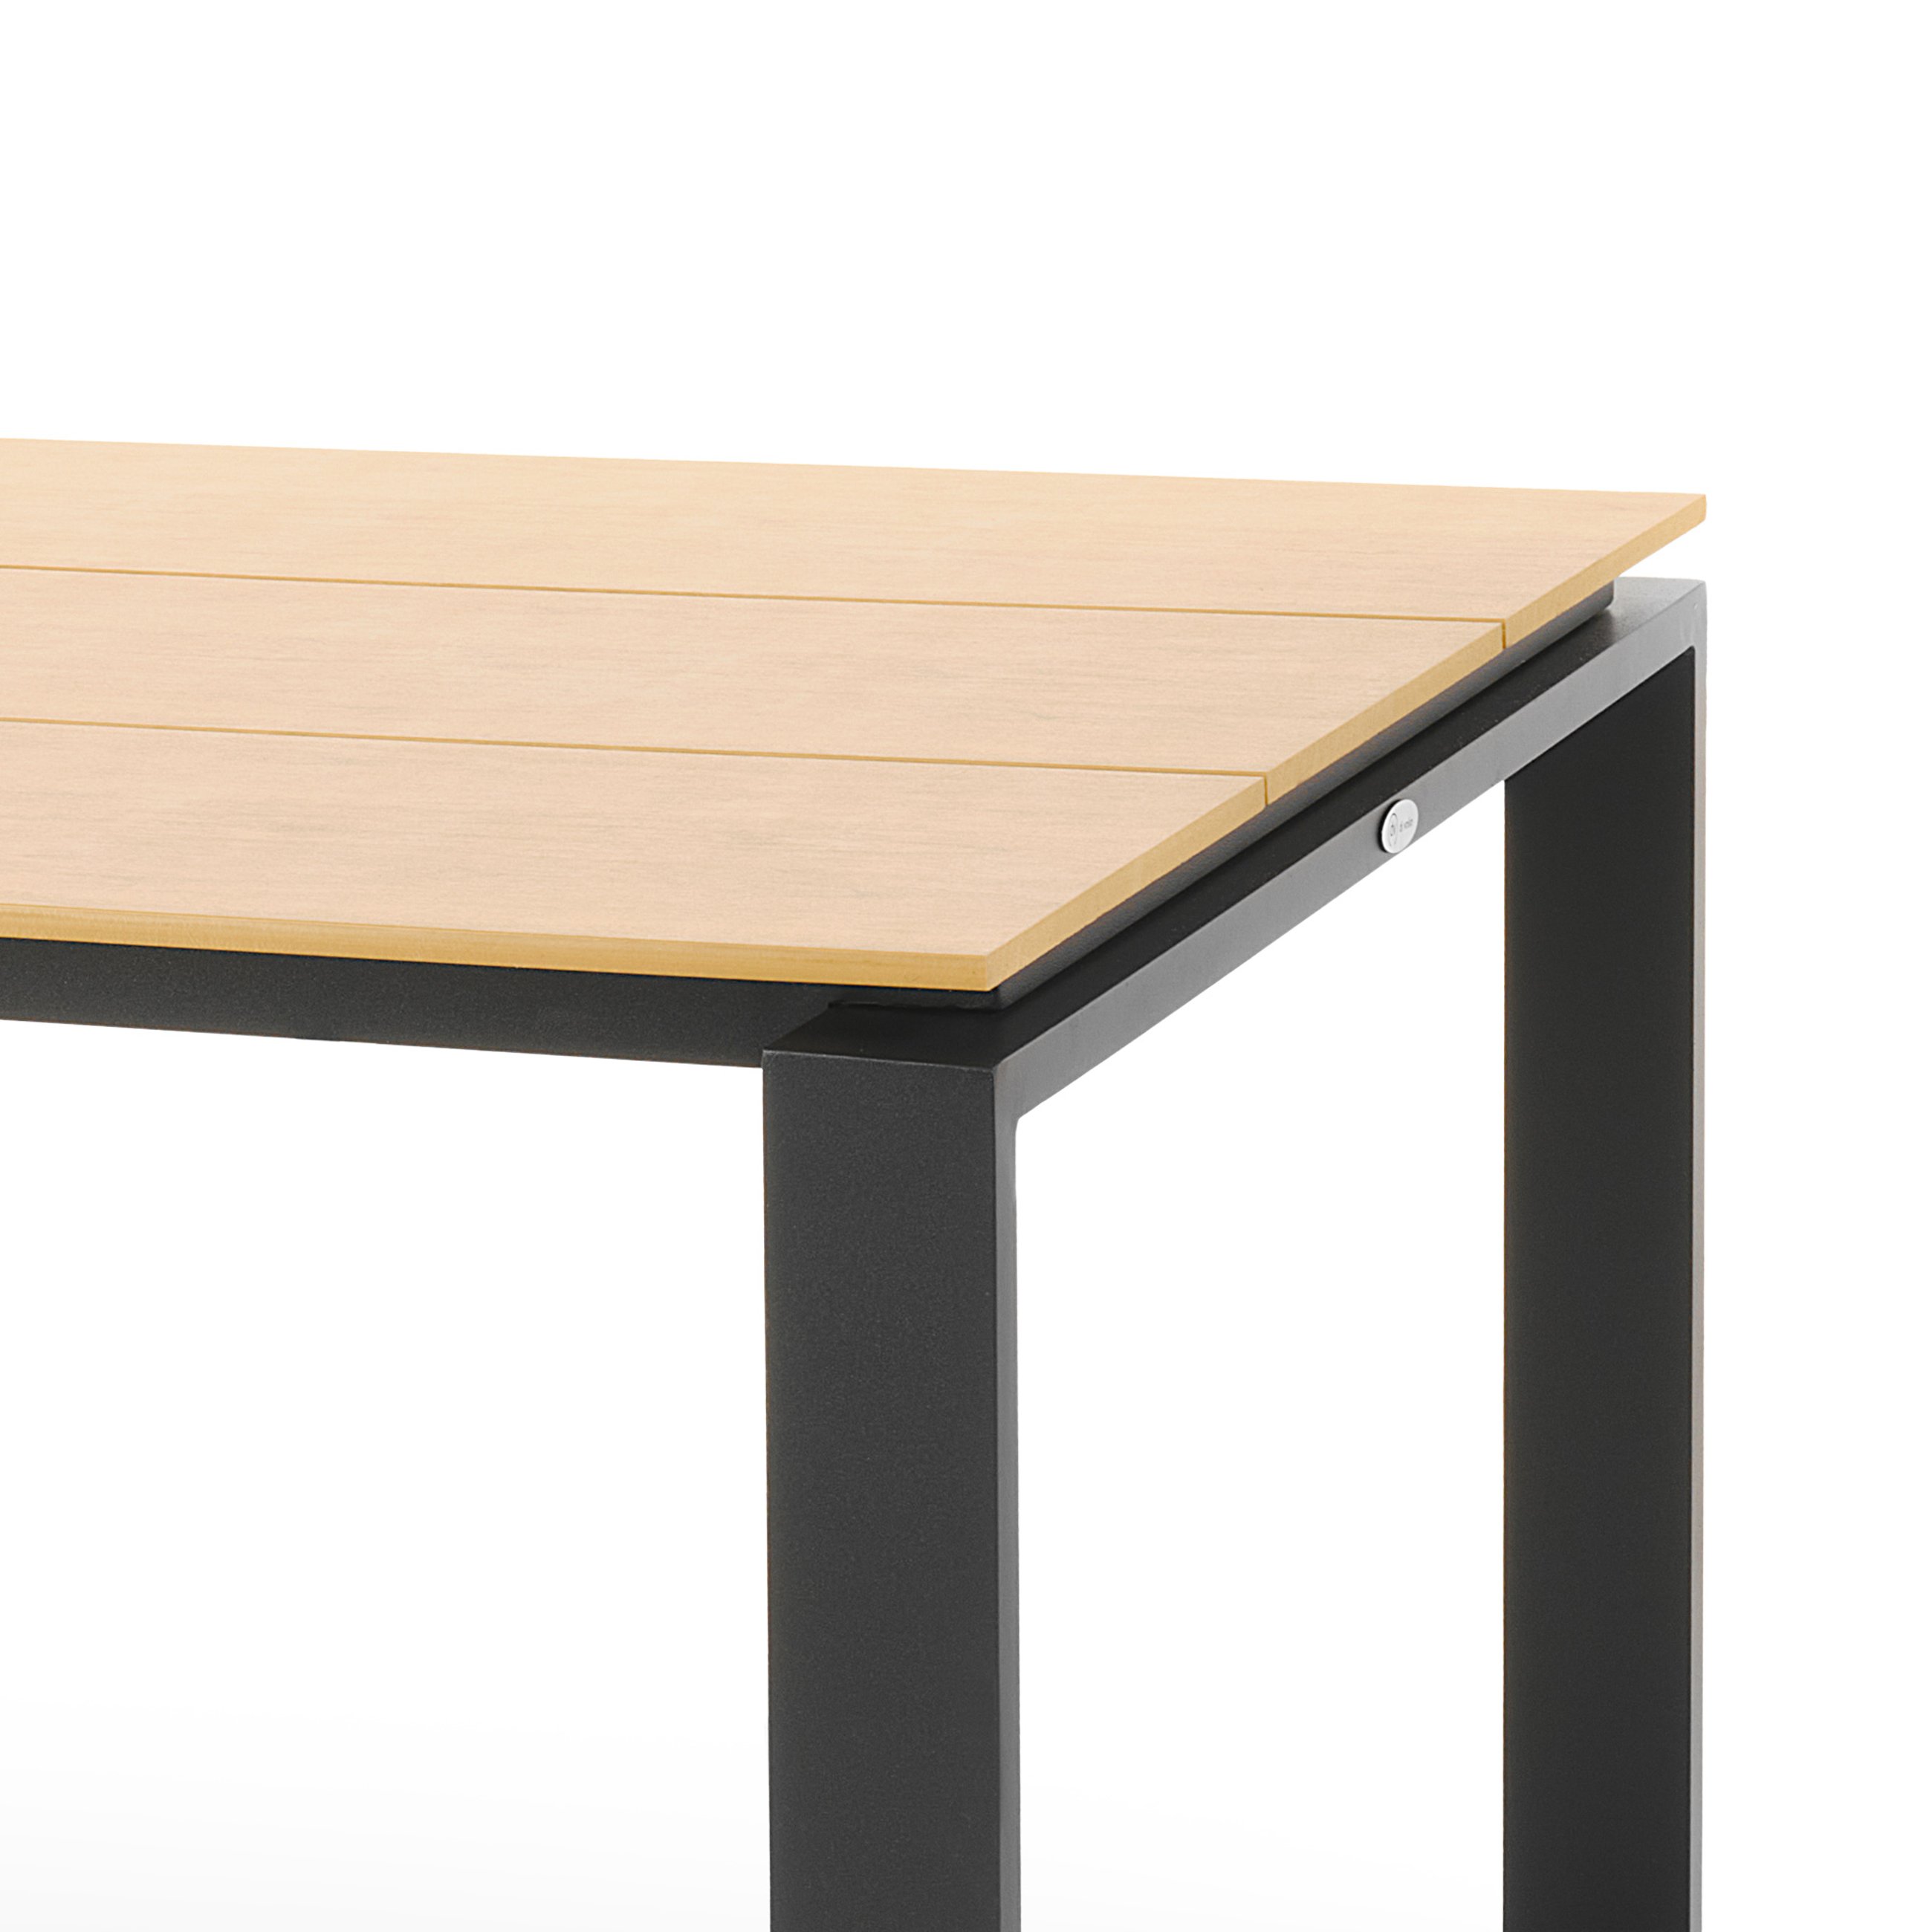 Blat stołu ogrodowego Giovo wykonany jest z wysokiej jakości tworzywa polywood